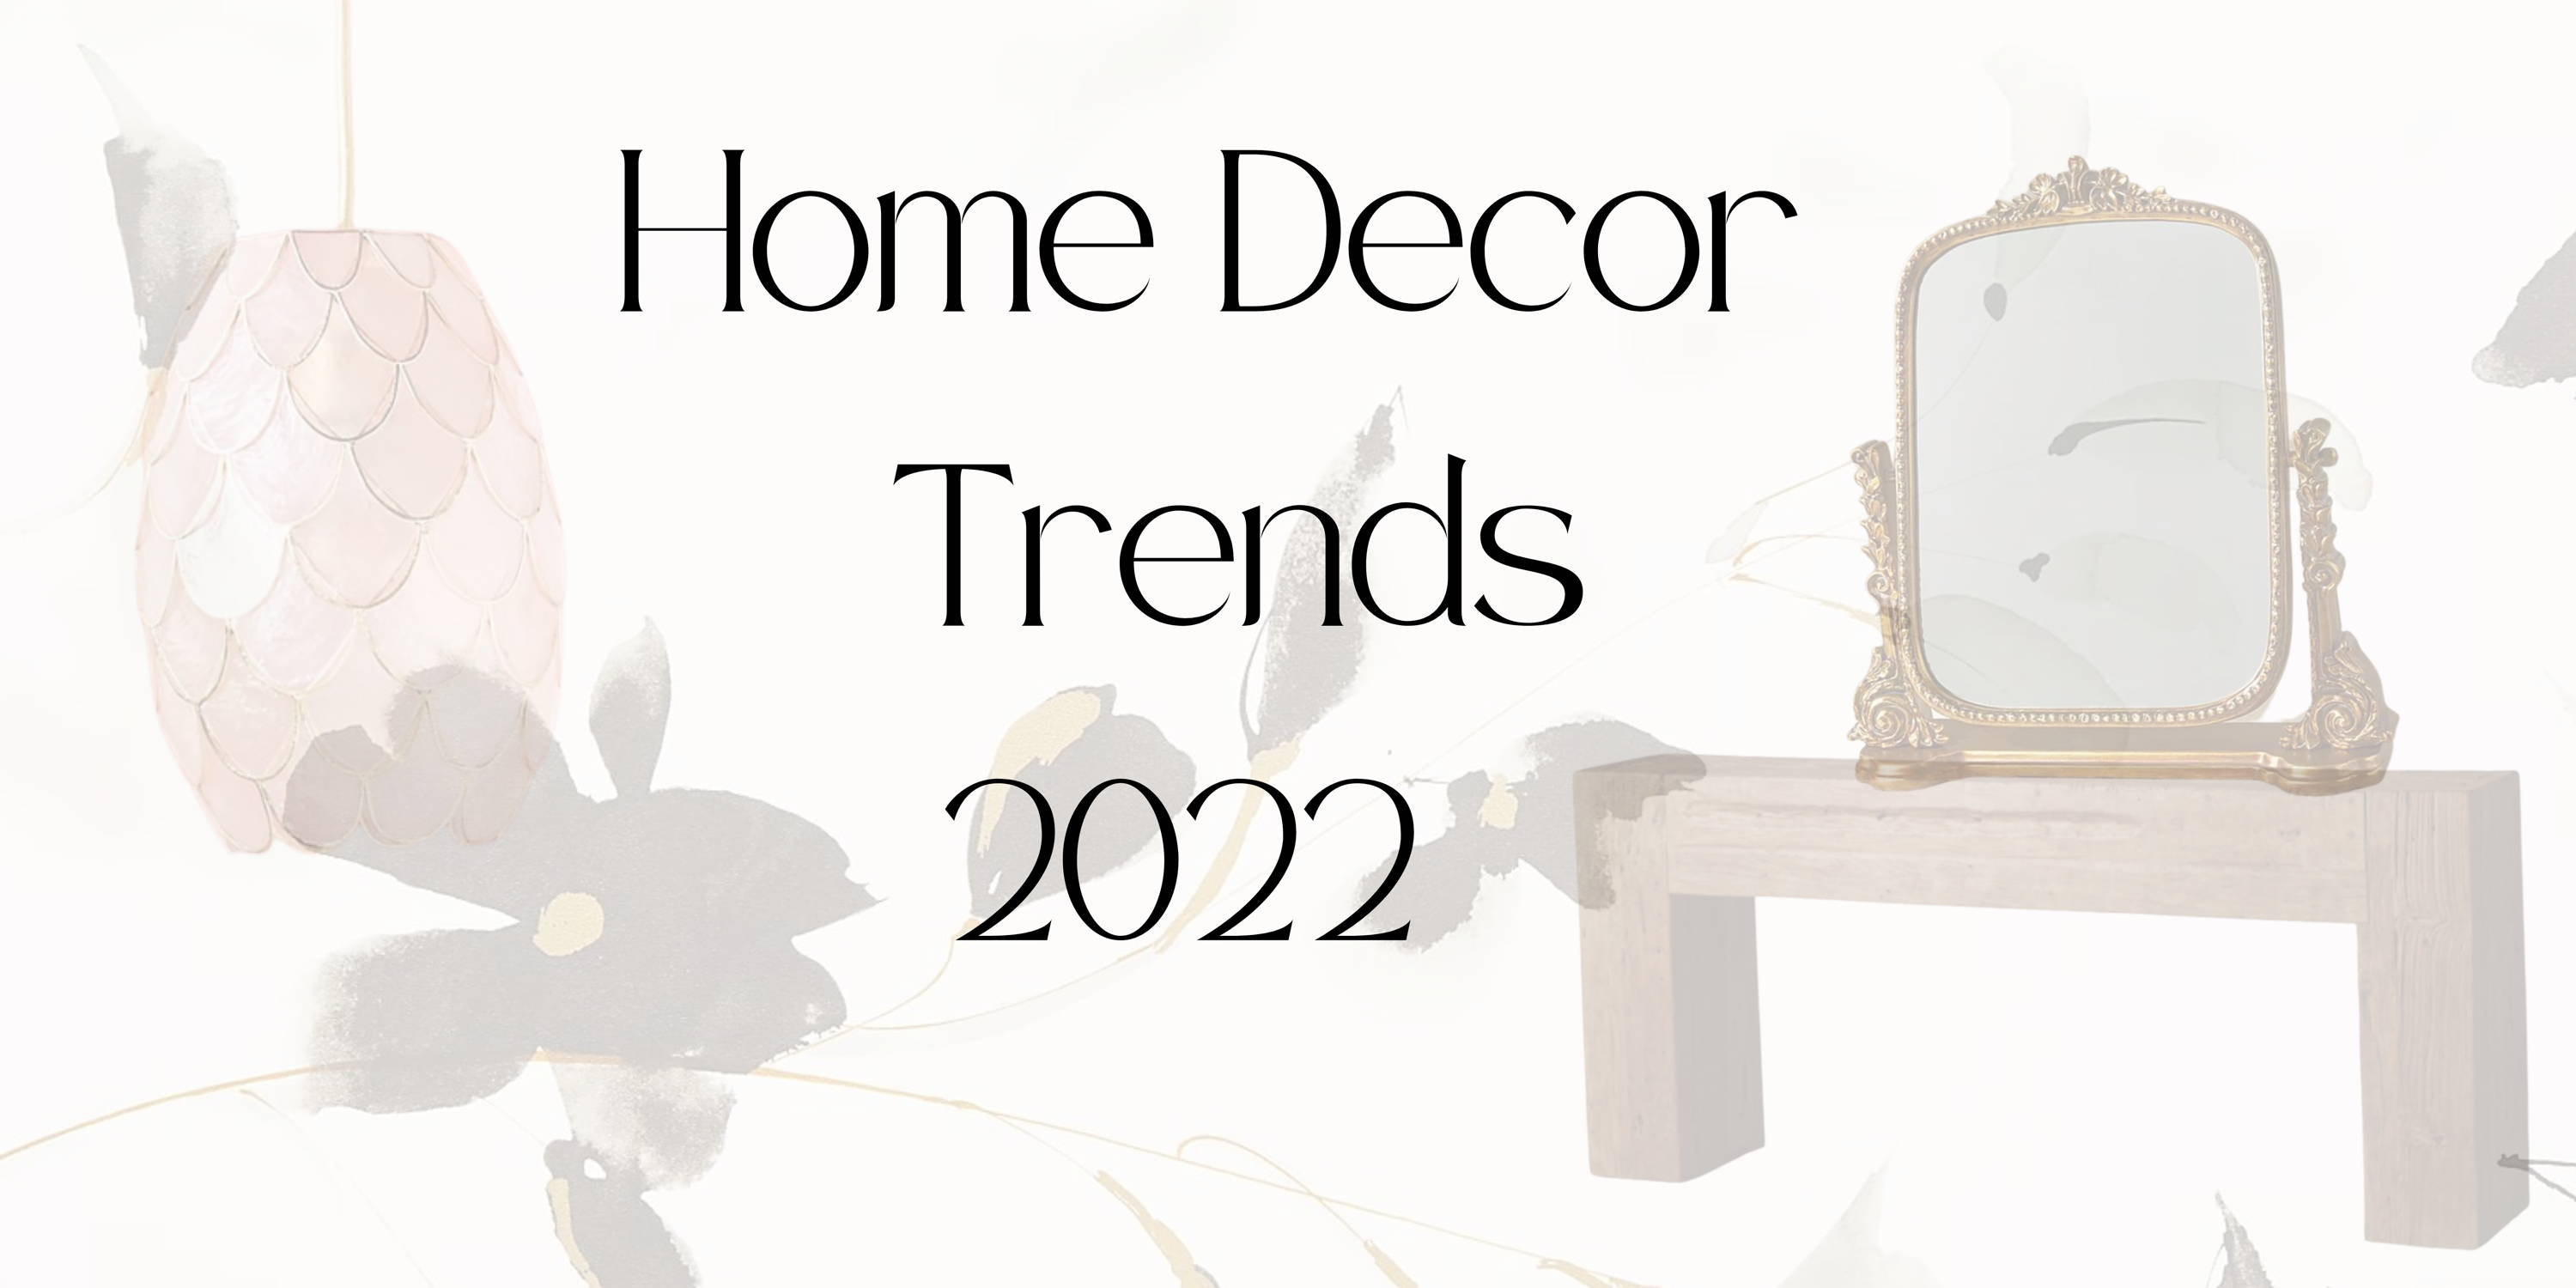 Home Decor Interior trends 2022